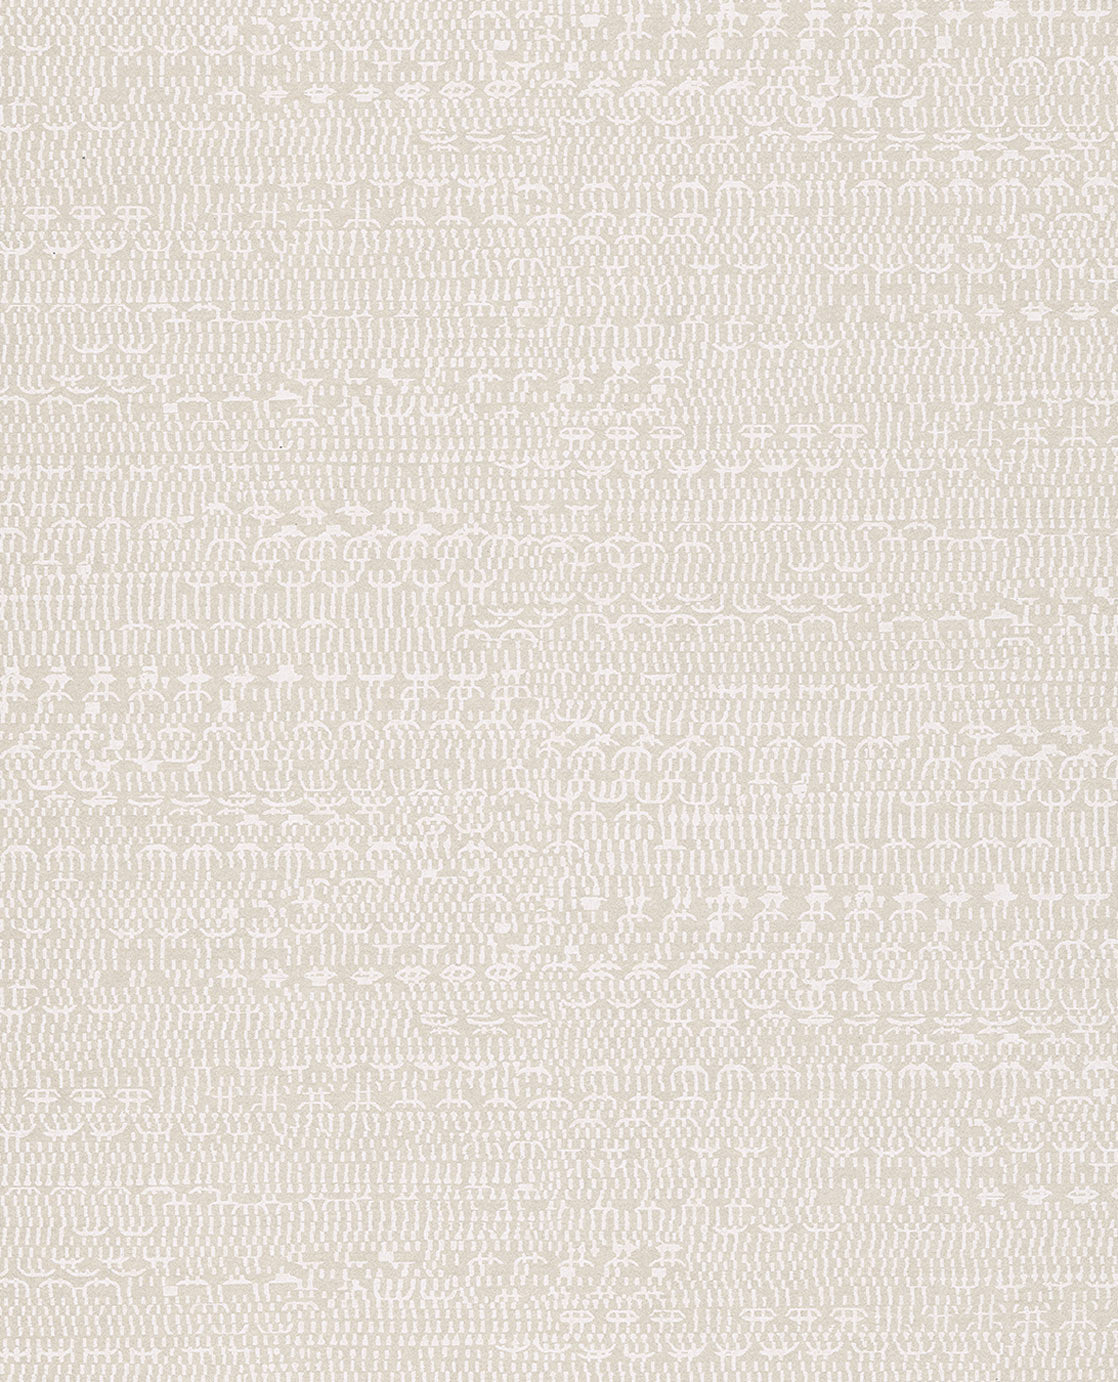 Siroc Textured Semi-plain wallpaper